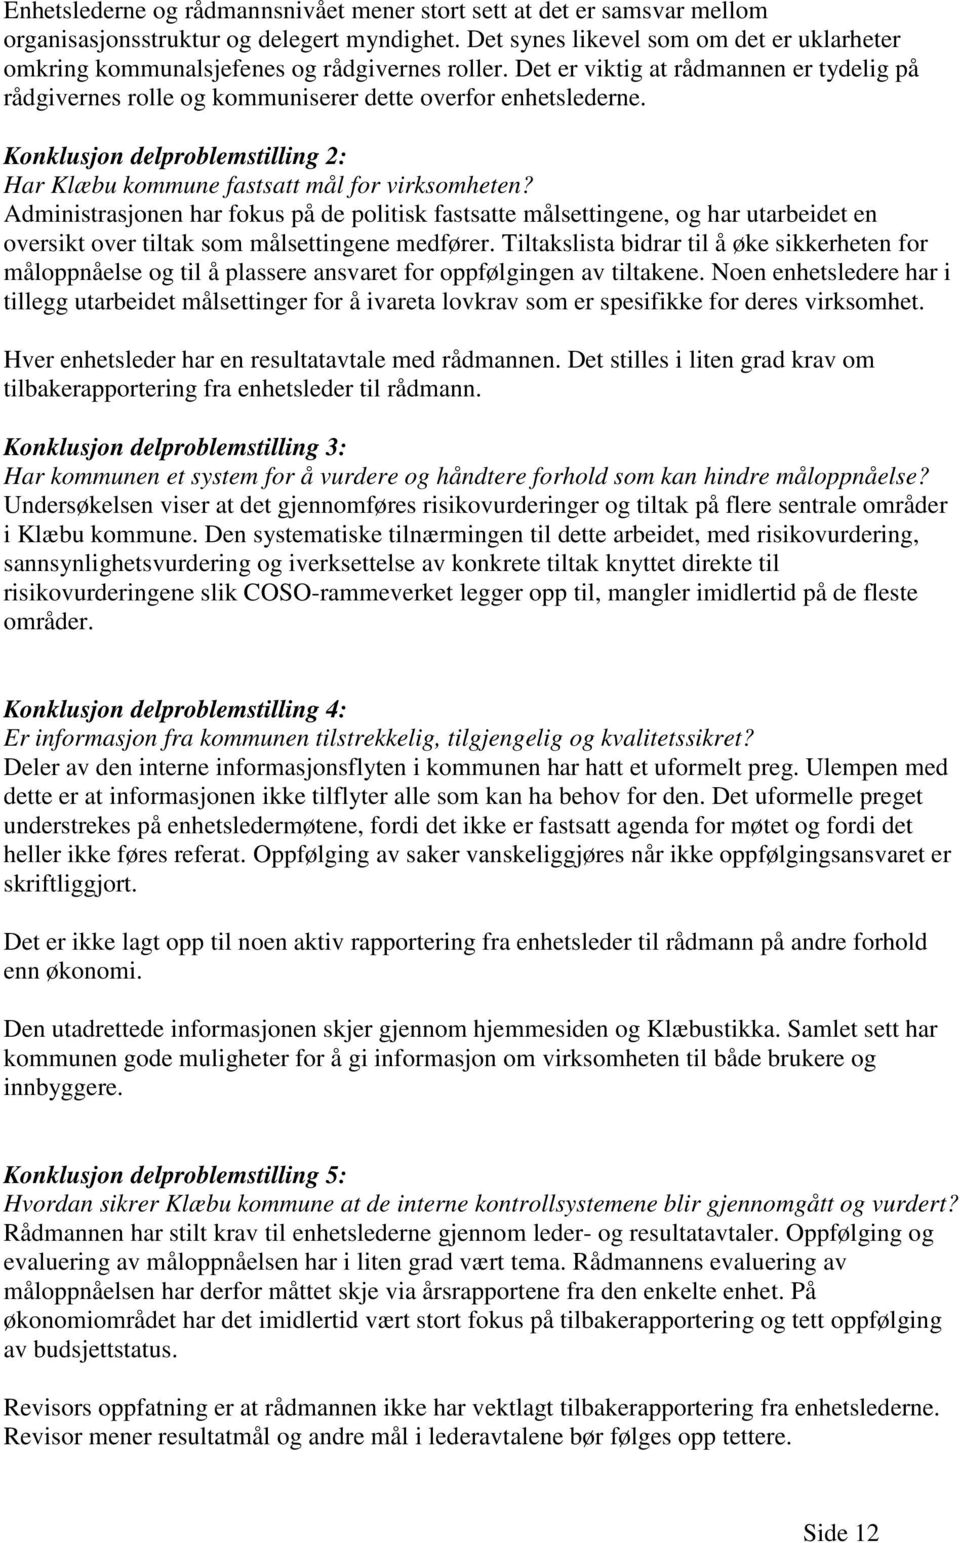 Konklusjon delproblemstilling 2: Har Klæbu kommune fastsatt mål for virksomheten?